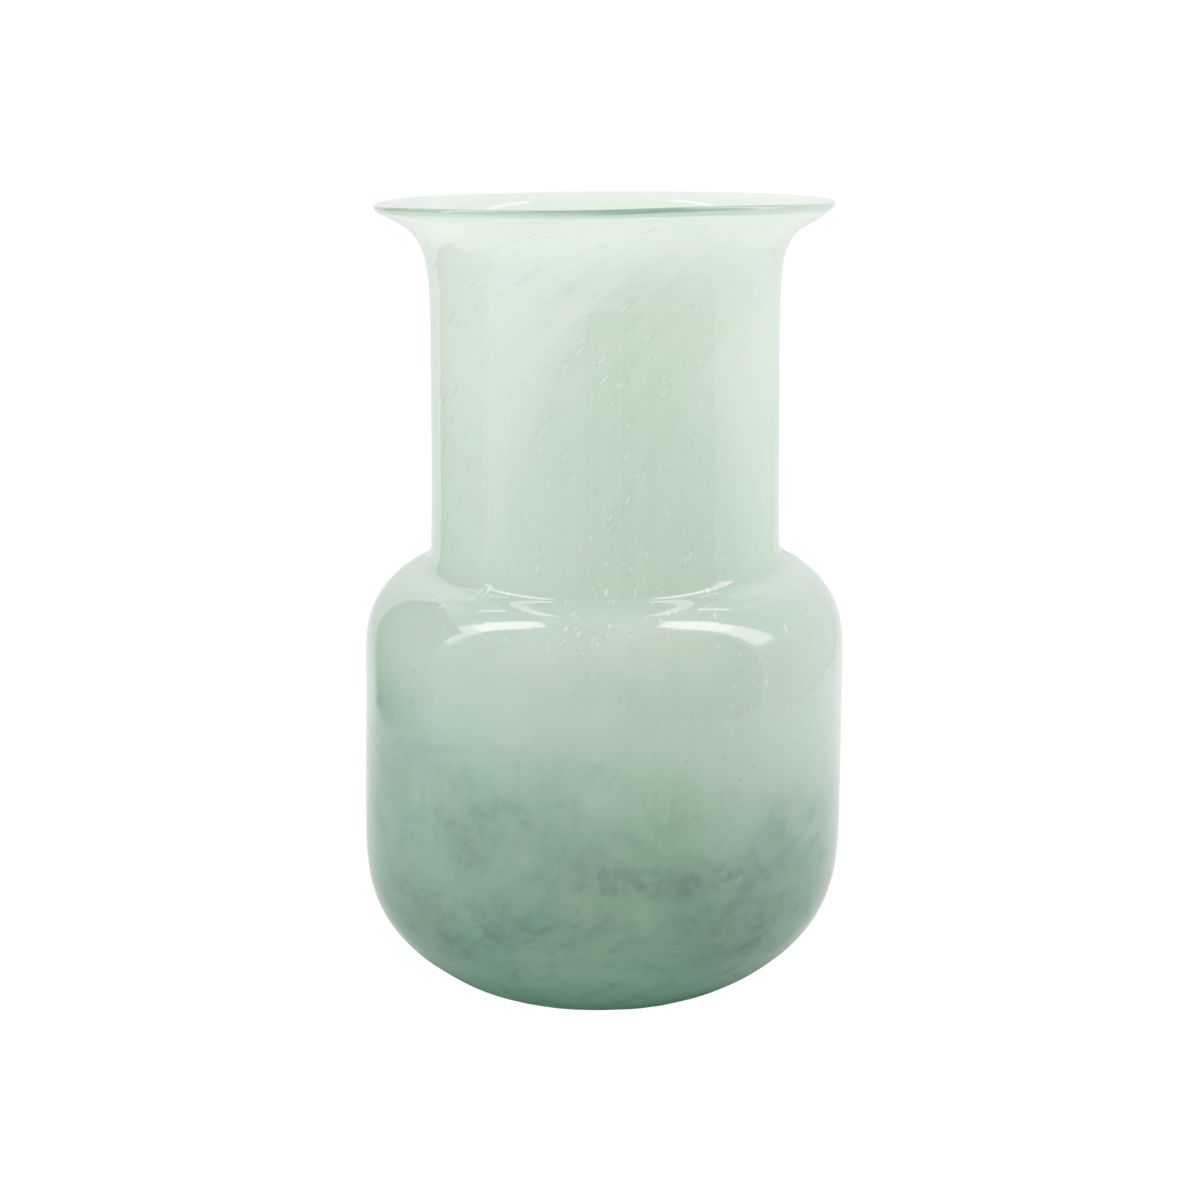 Billede af Vase, Mint, Grøn hos ModernHouse.dk